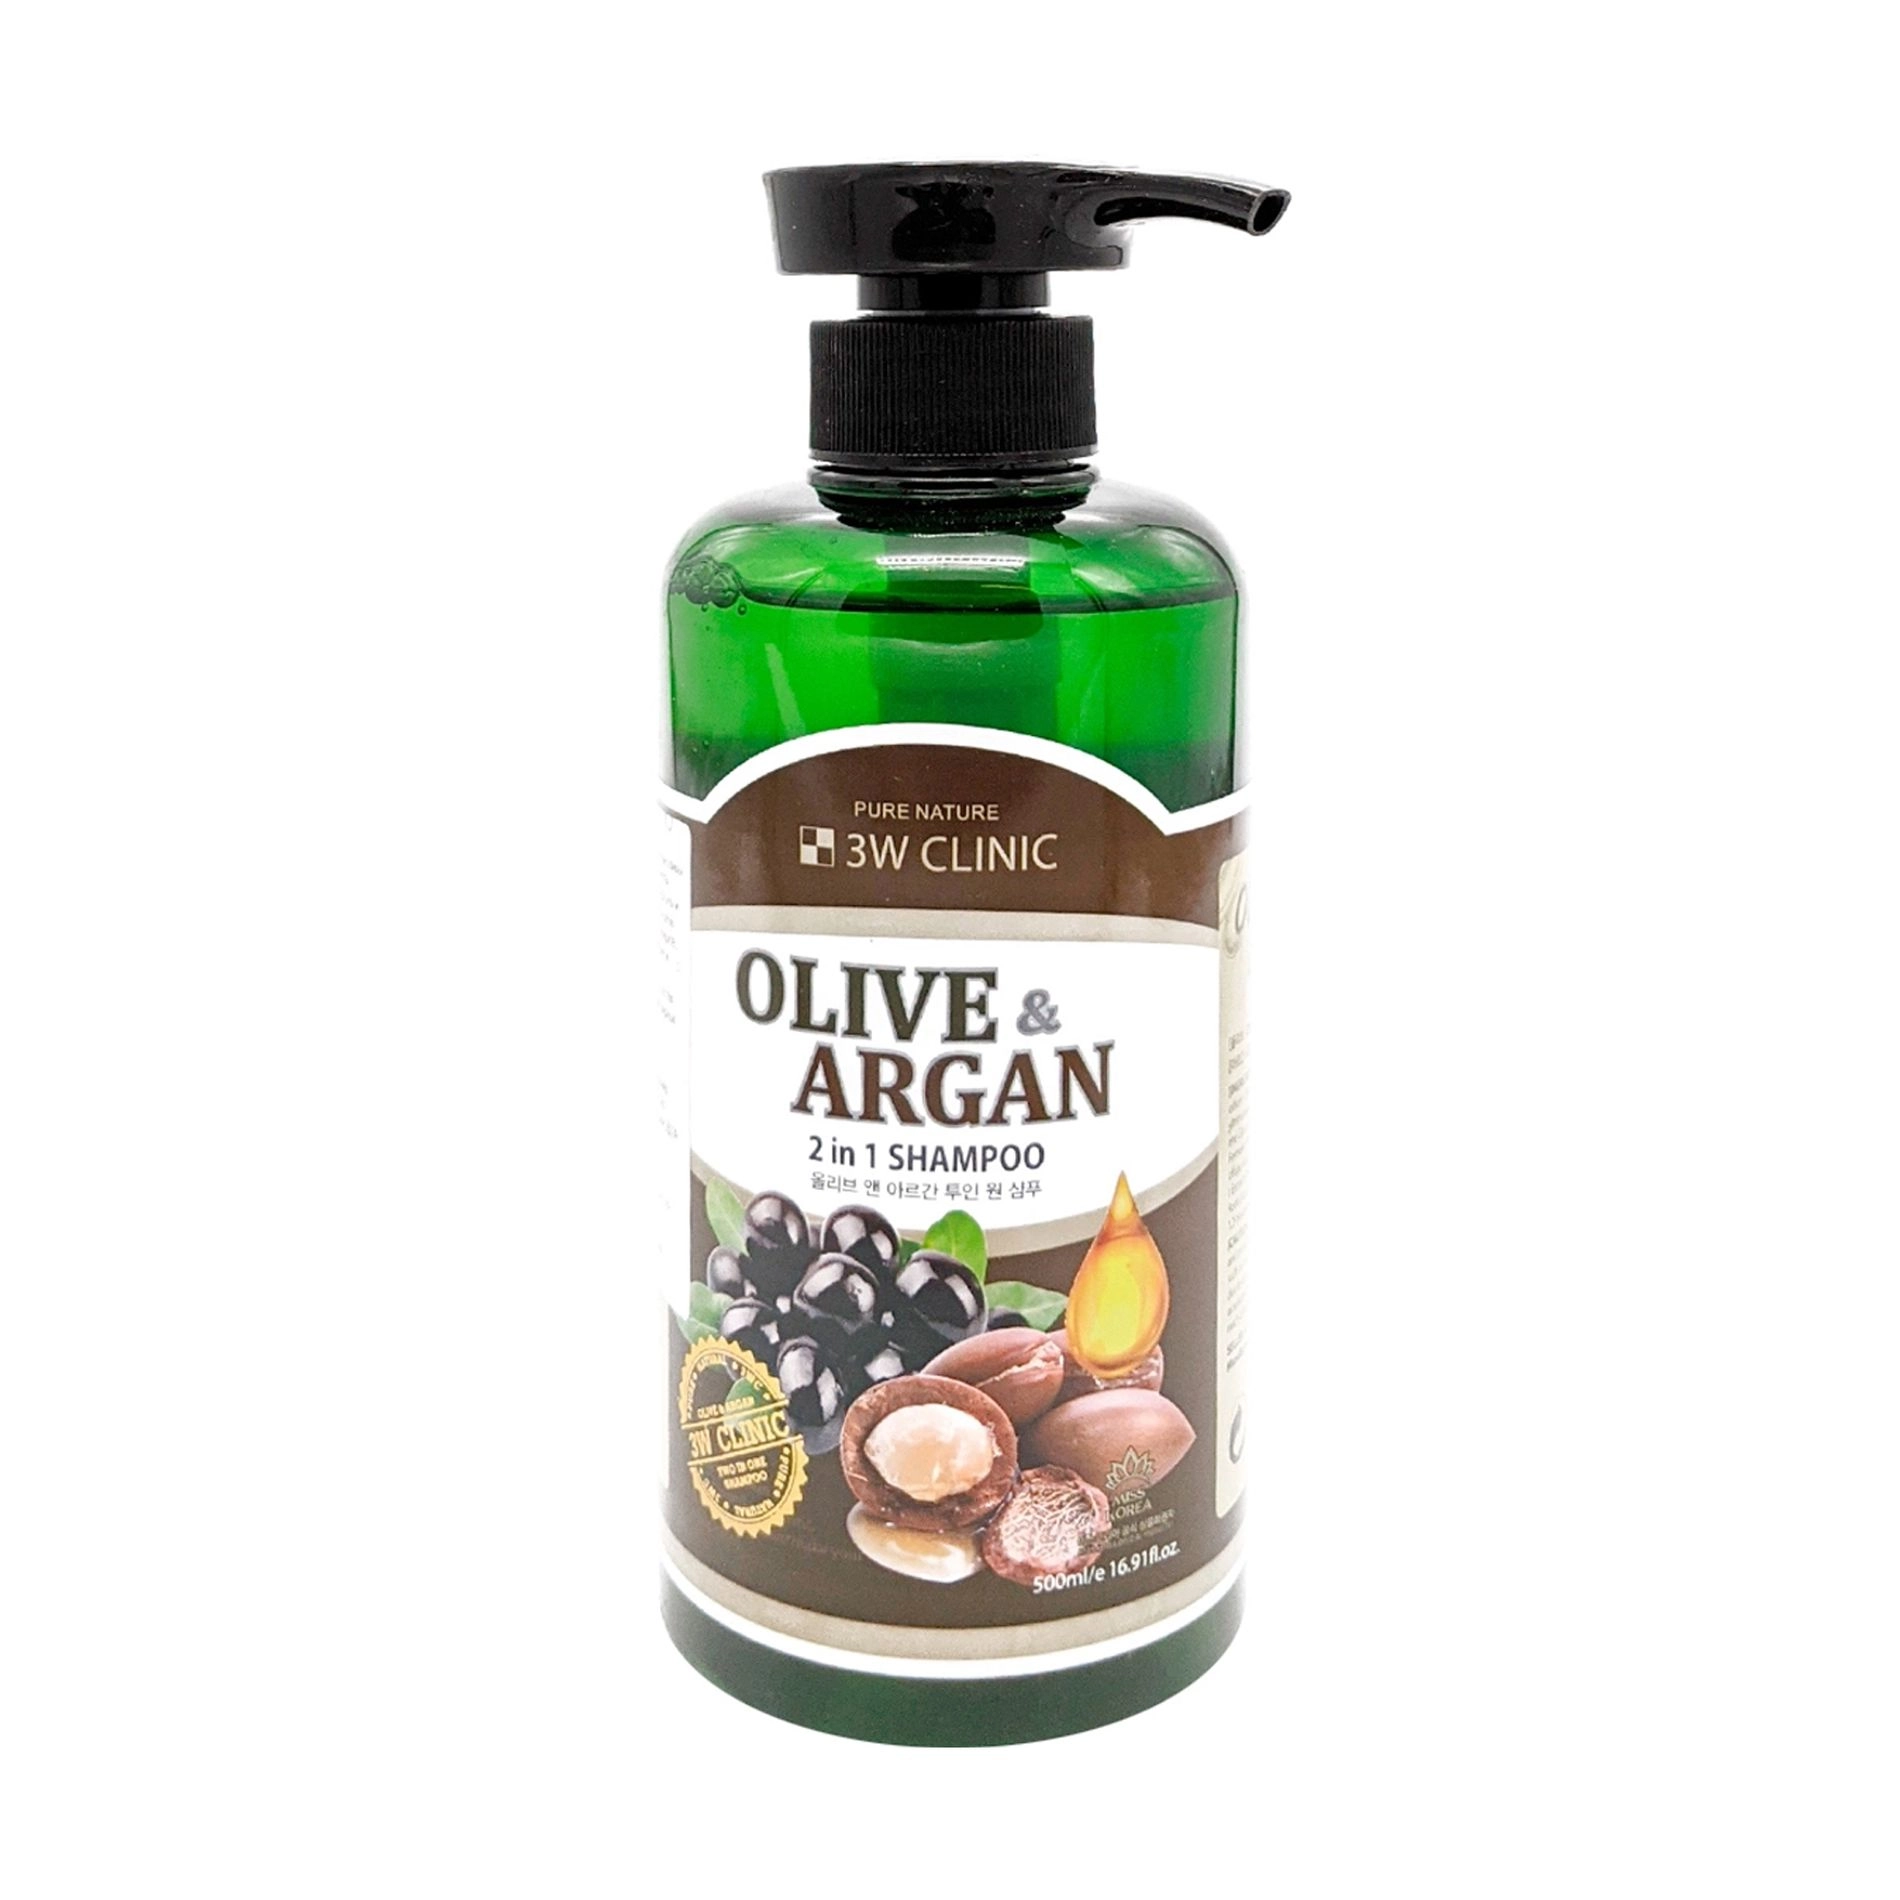 3W Clinic Шампунь для повреждённых волос Olive & Argan 2 in 1 Shampoo с маслами арганы и оливы, 500 мл - фото N1